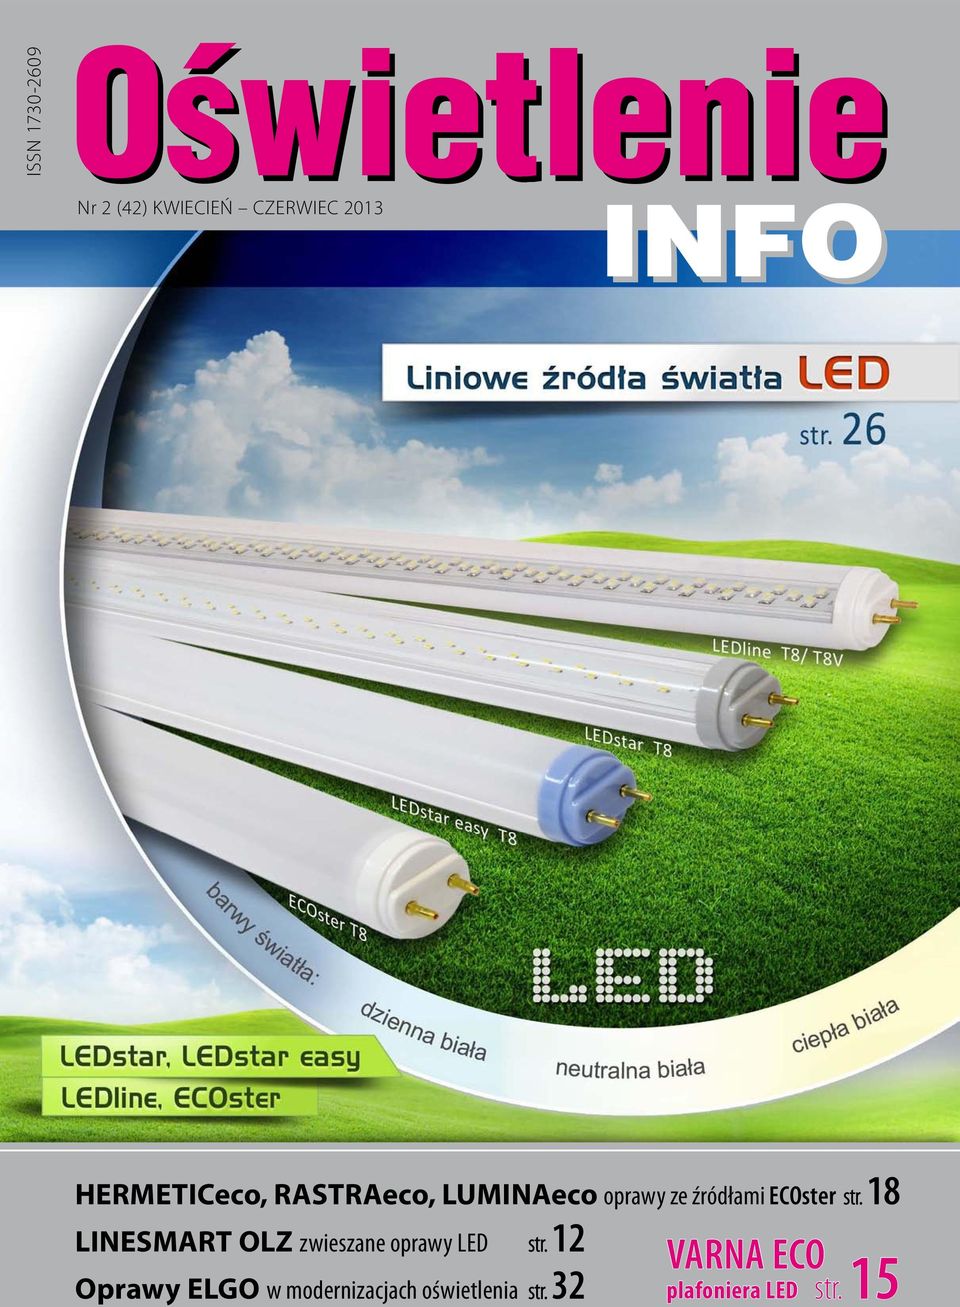 LINESMART OLZ zwieszane oprawy LED Oprawy ELGO w modernizacjach